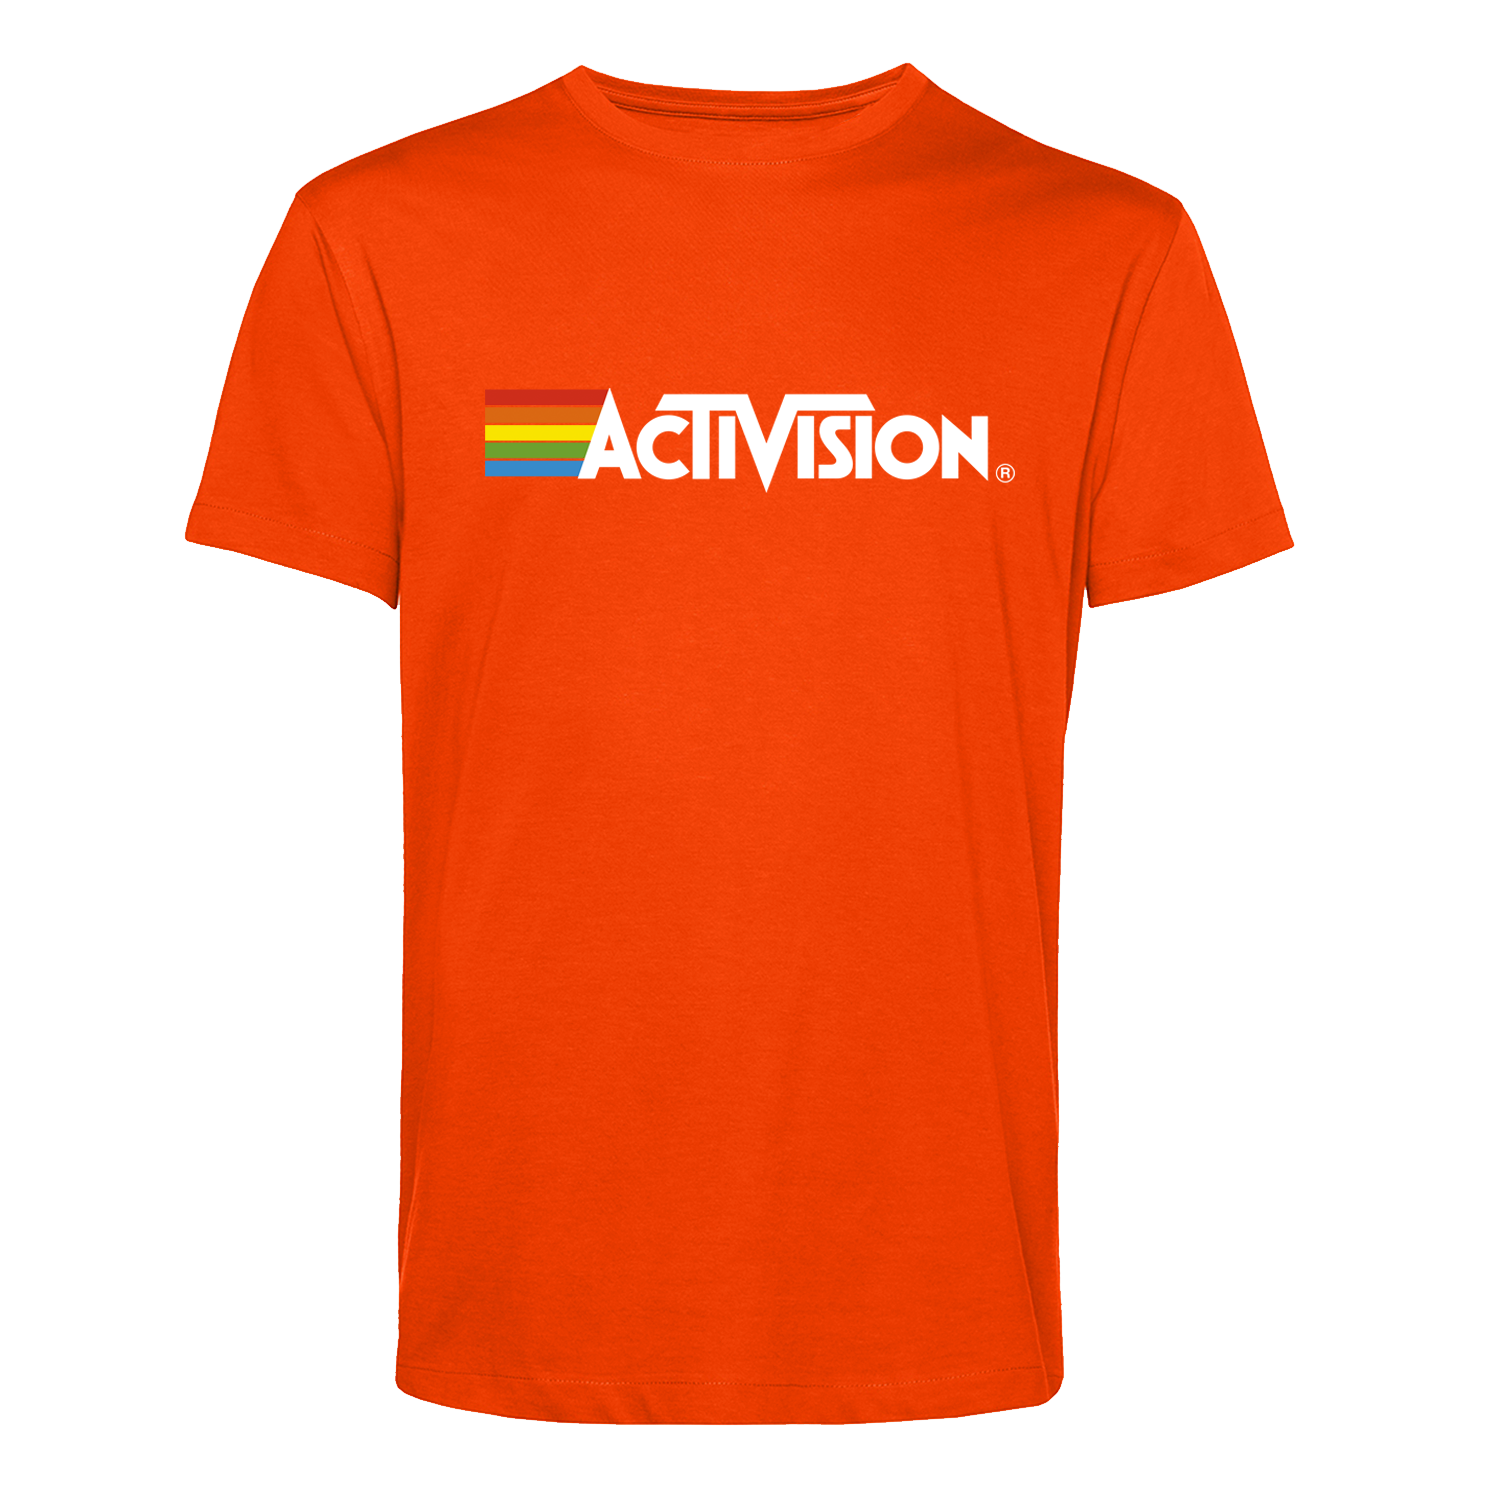 Activision Rainbow T-Shirt in Bright Orange